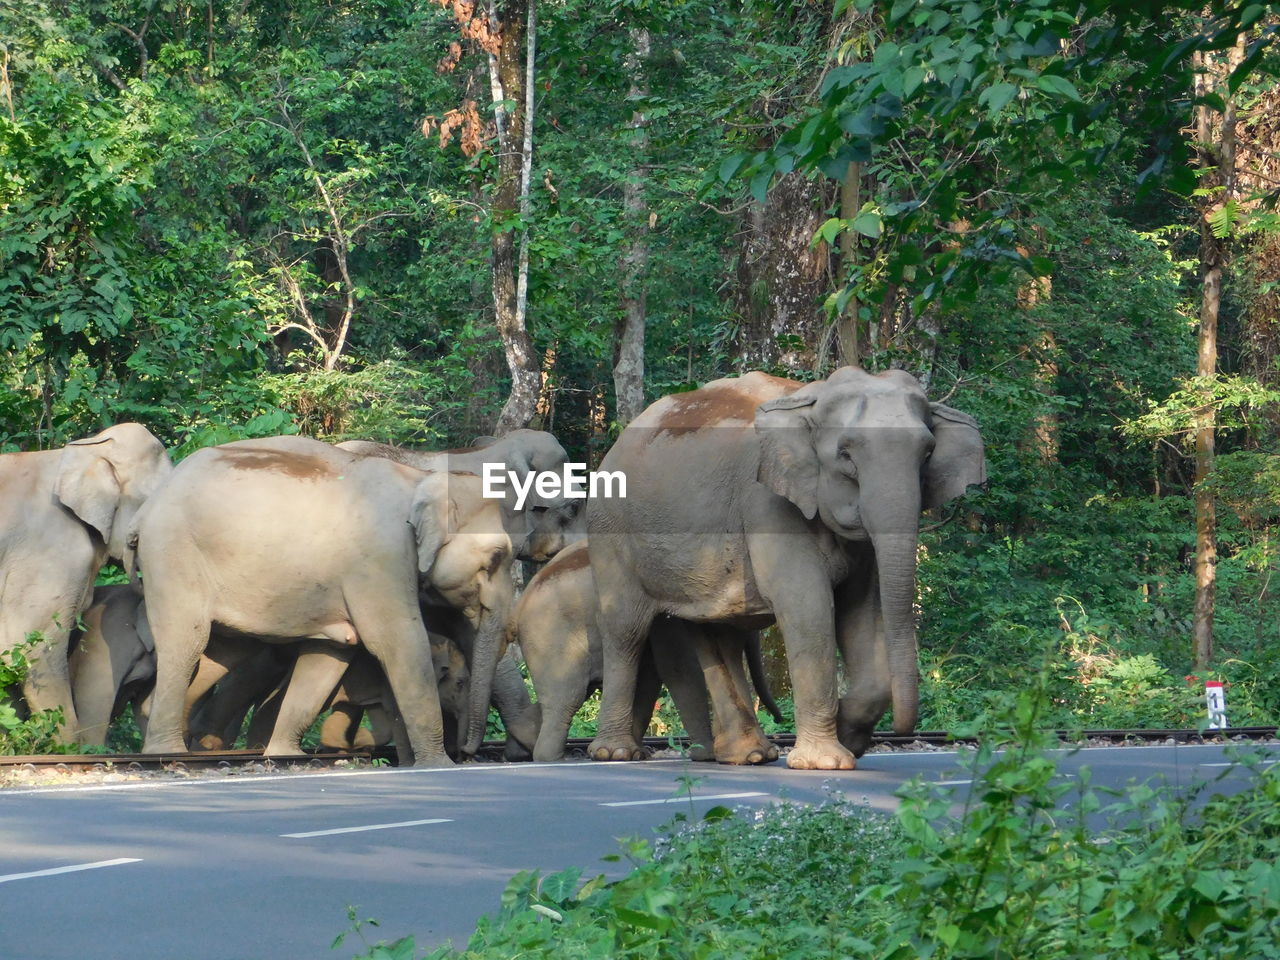 ELEPHANT WALKING IN THE ROAD